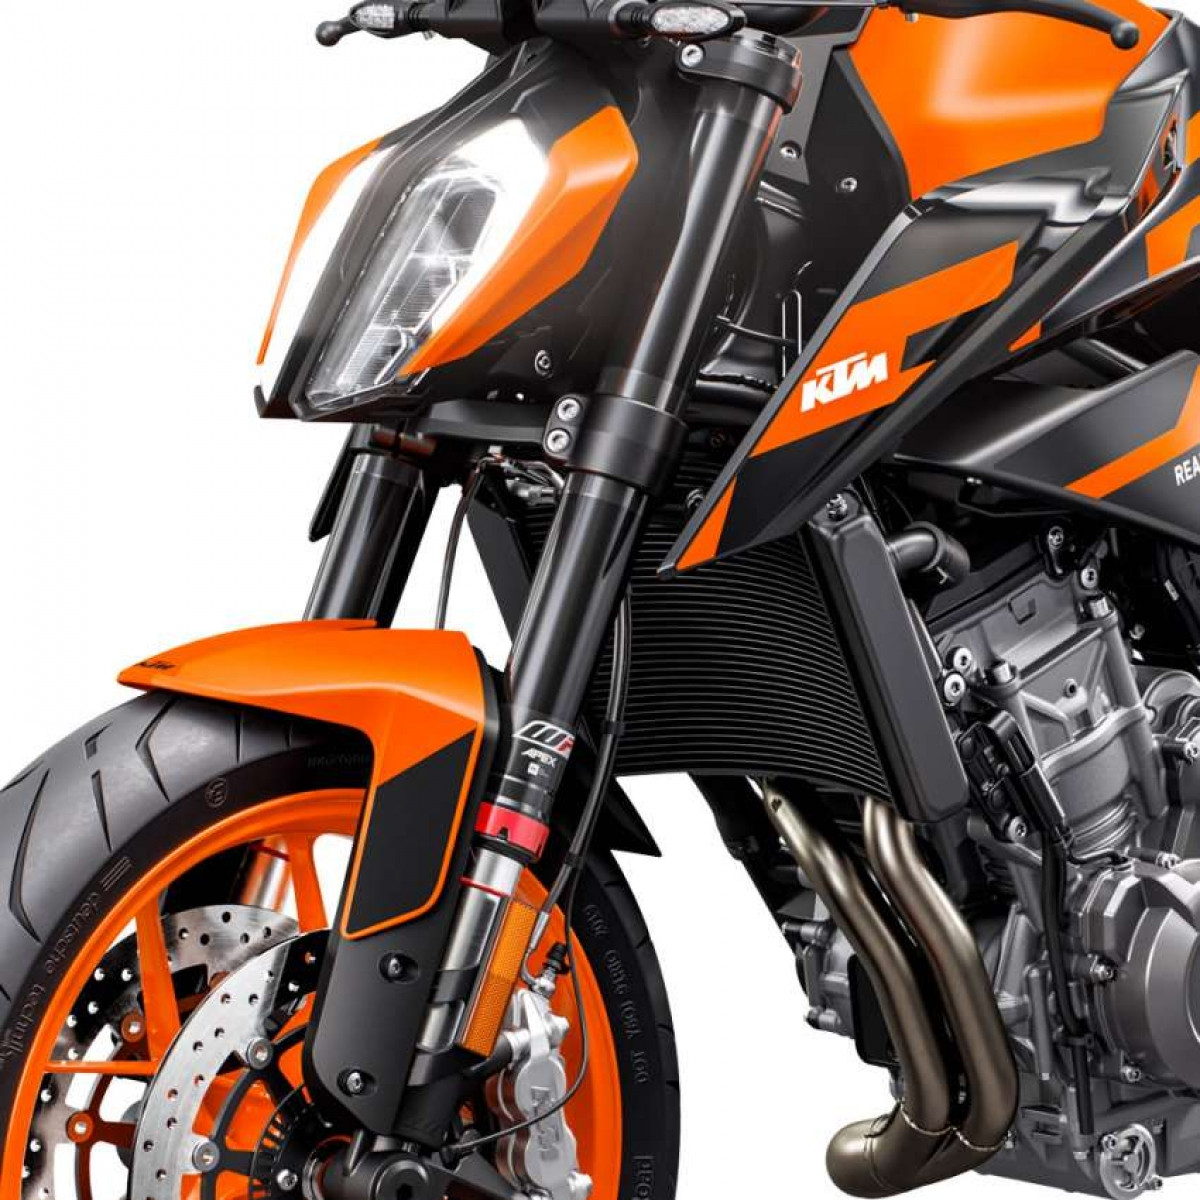 Chiếc Duke 890 GP sử dụng đồ họa KTM GP16 MotoGP, được hoàn thiện bởi bộ vành sơn màu cam sáng.